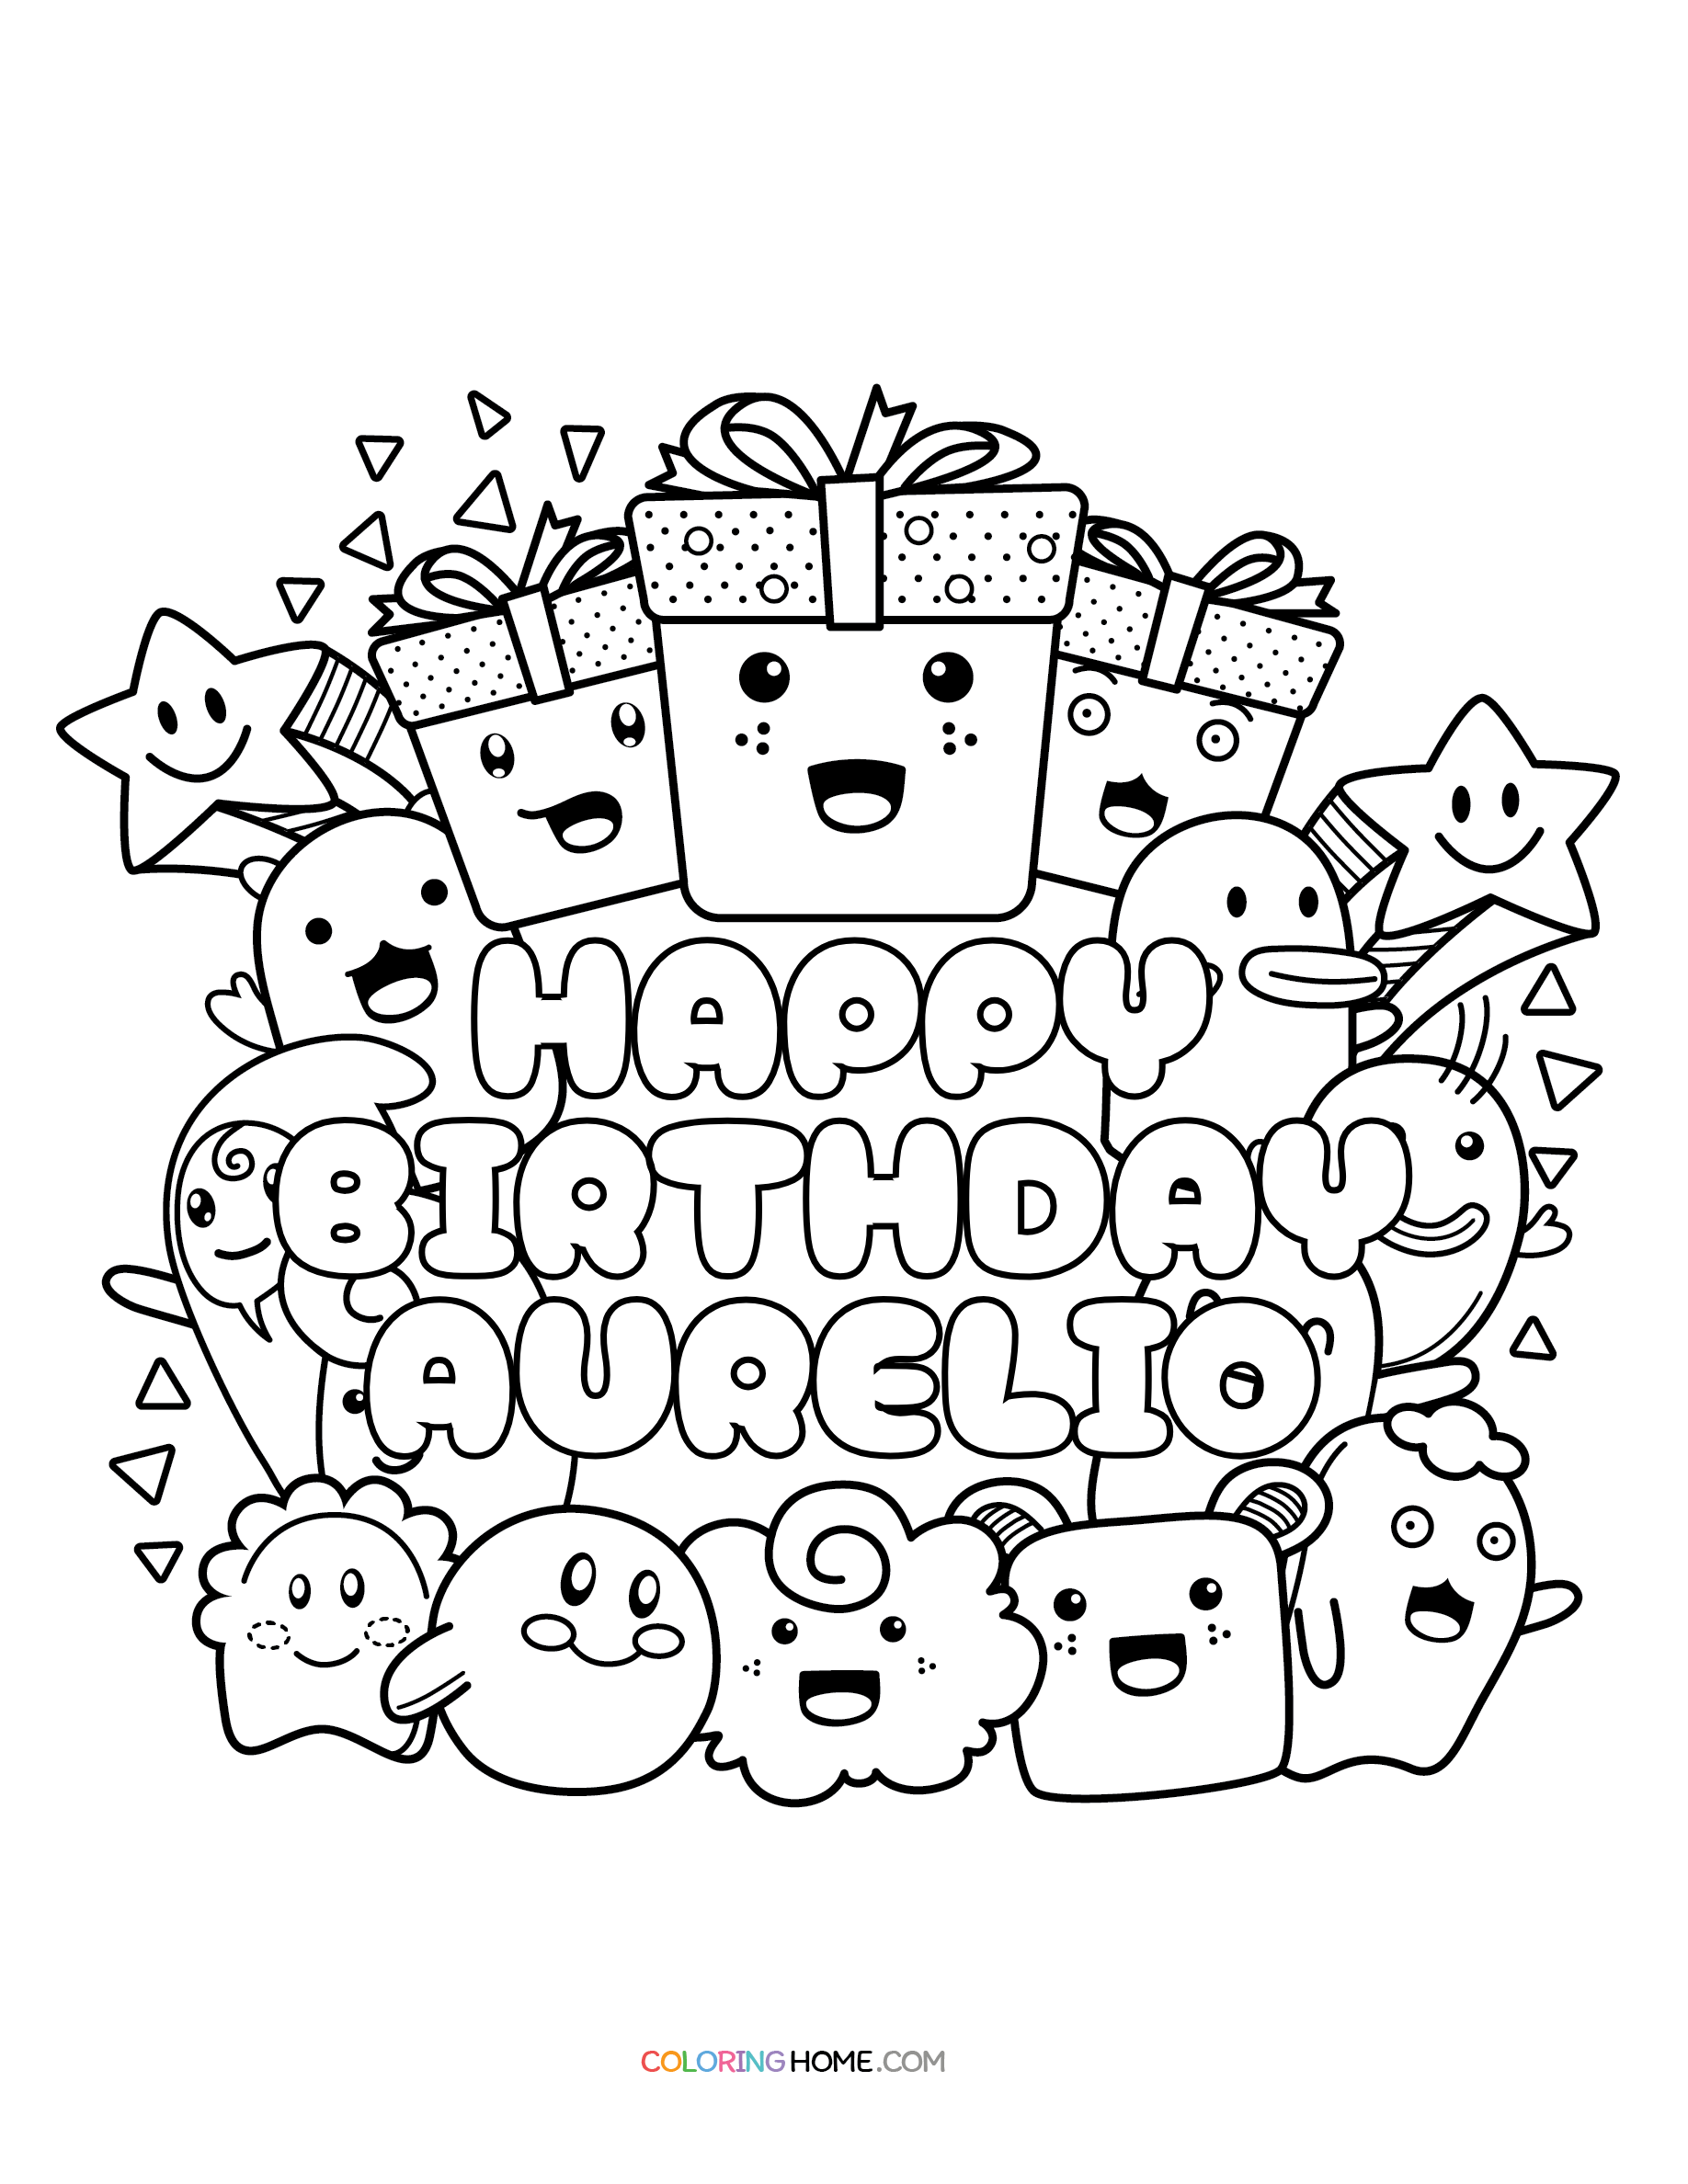 Happy Birthday Aurelio coloring page